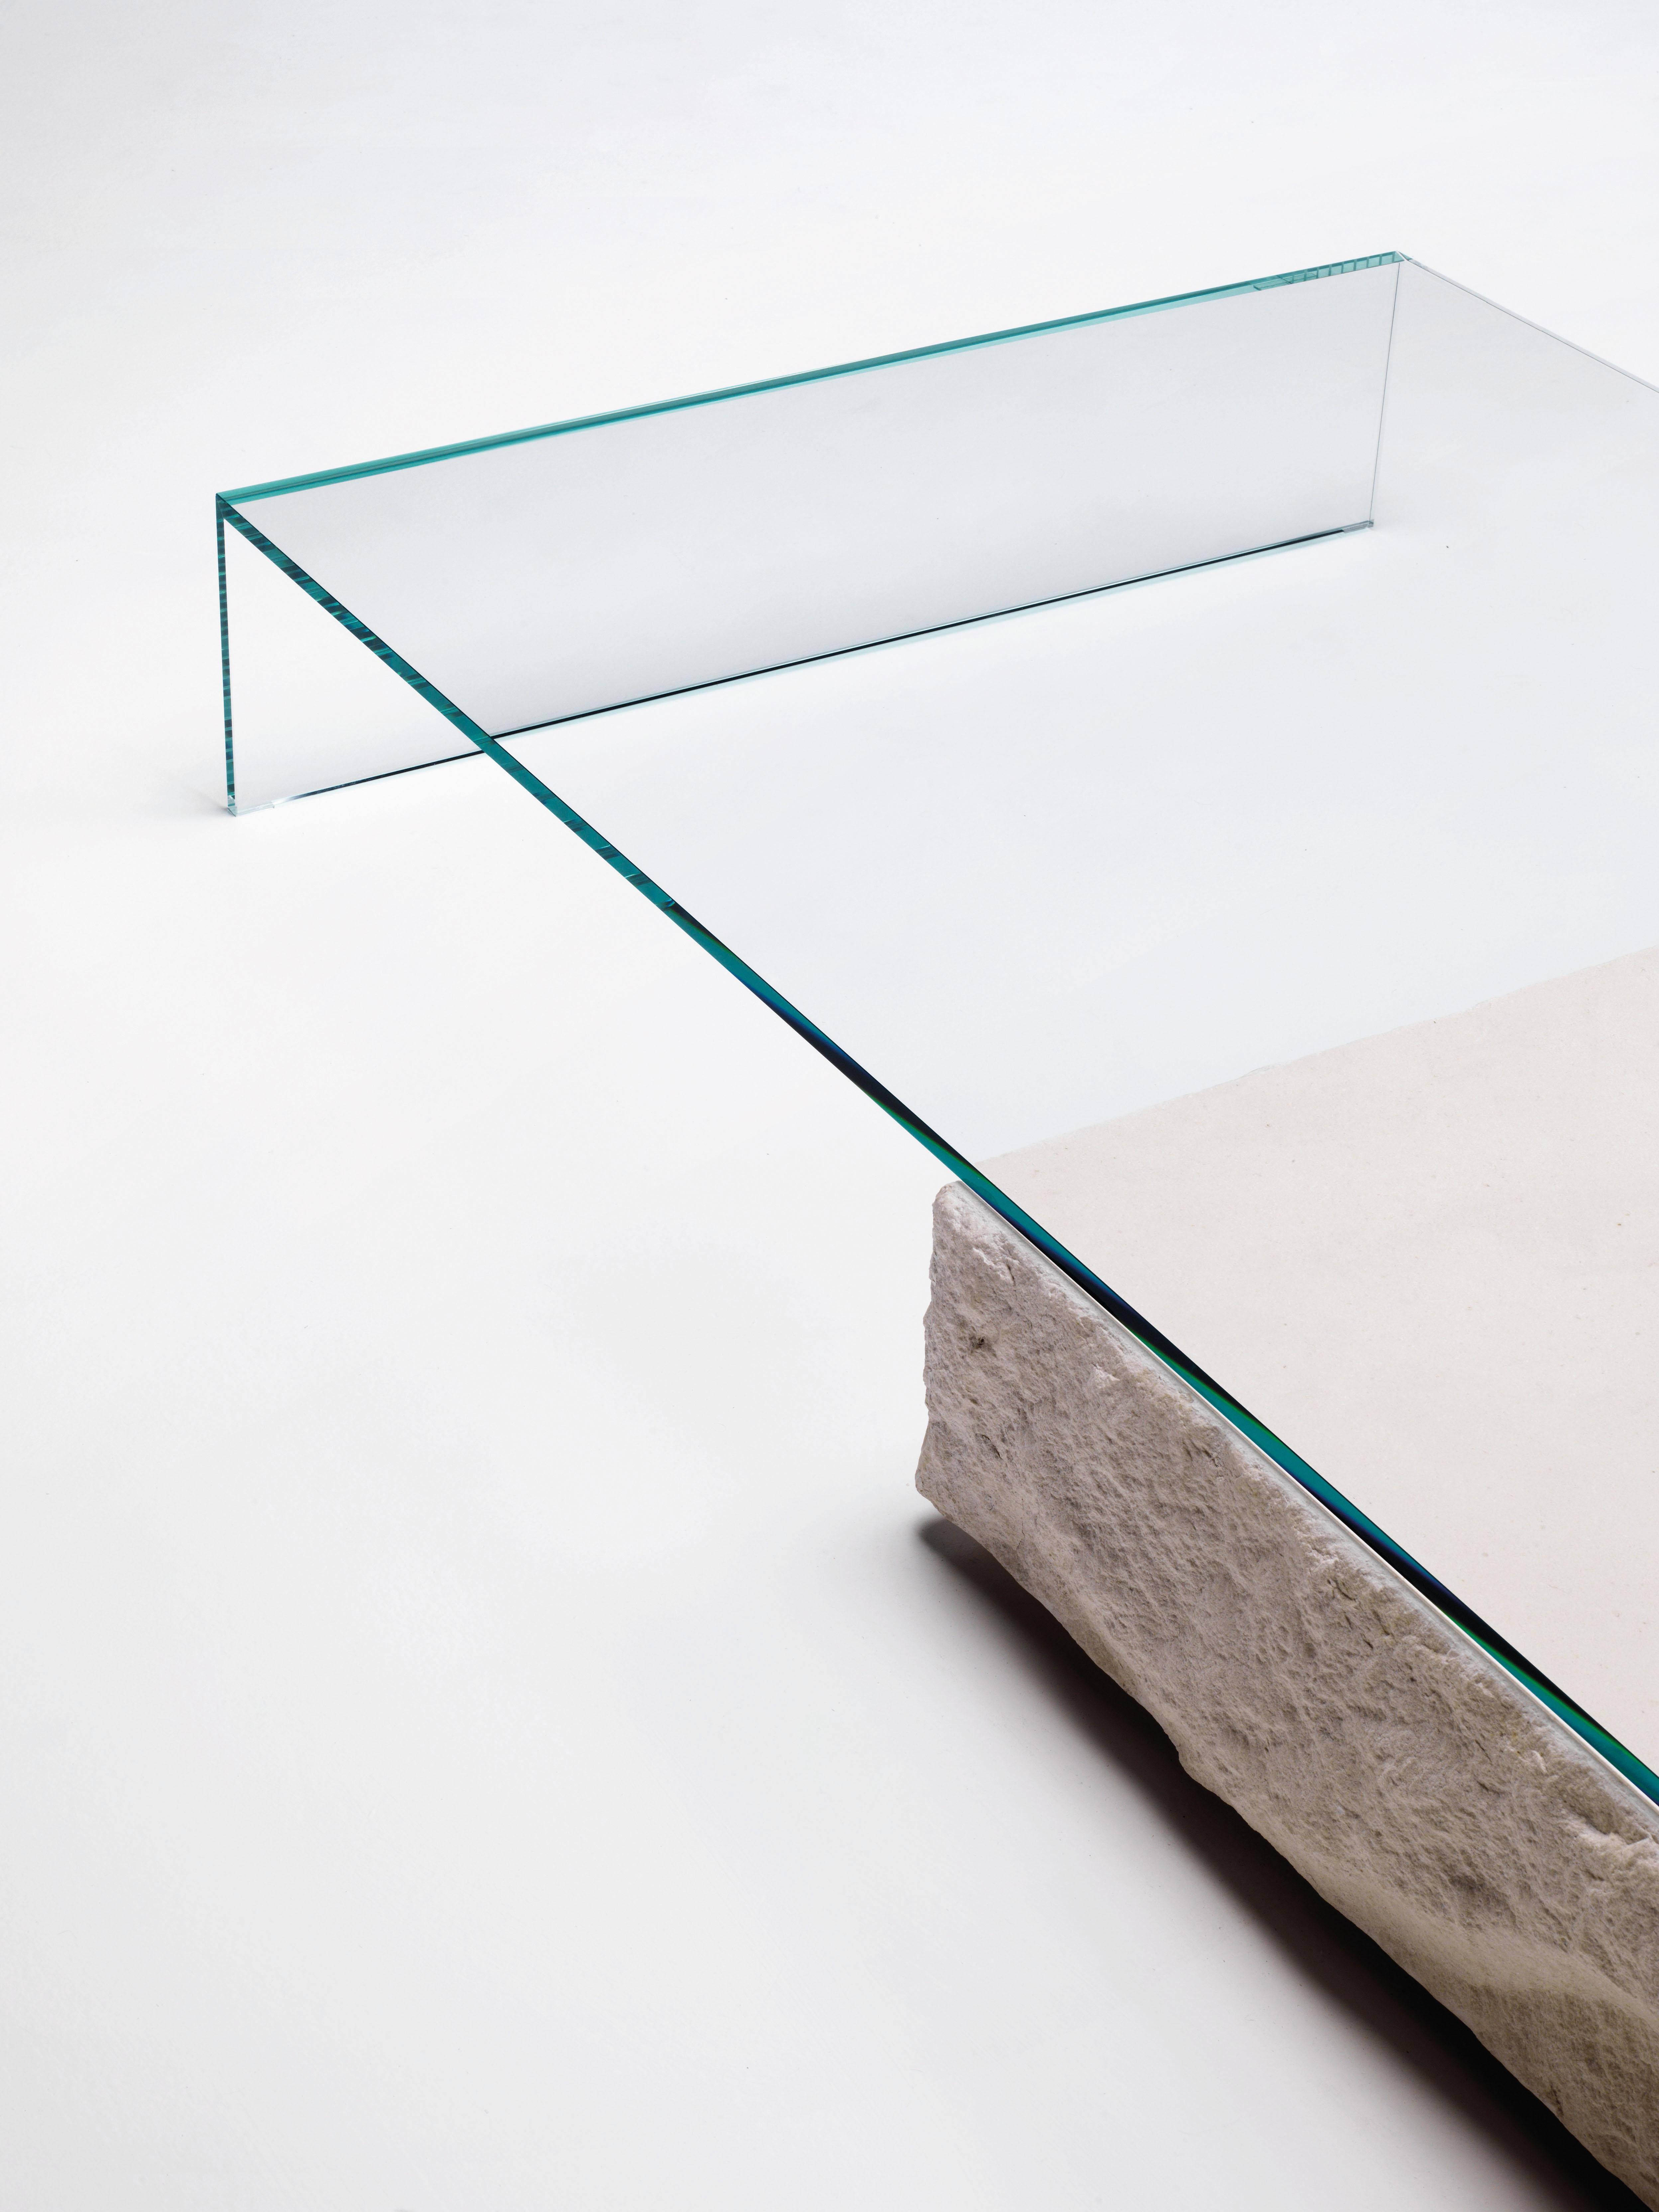 La table basse Terraliquida est présentée ici dans le verre extralight transparent. Table basse composée d'une pierre calcaire parallélépipédique d'aspect monolithique et d'un élément en verre extralight transparent à 45° collé et trempé de 15 mm